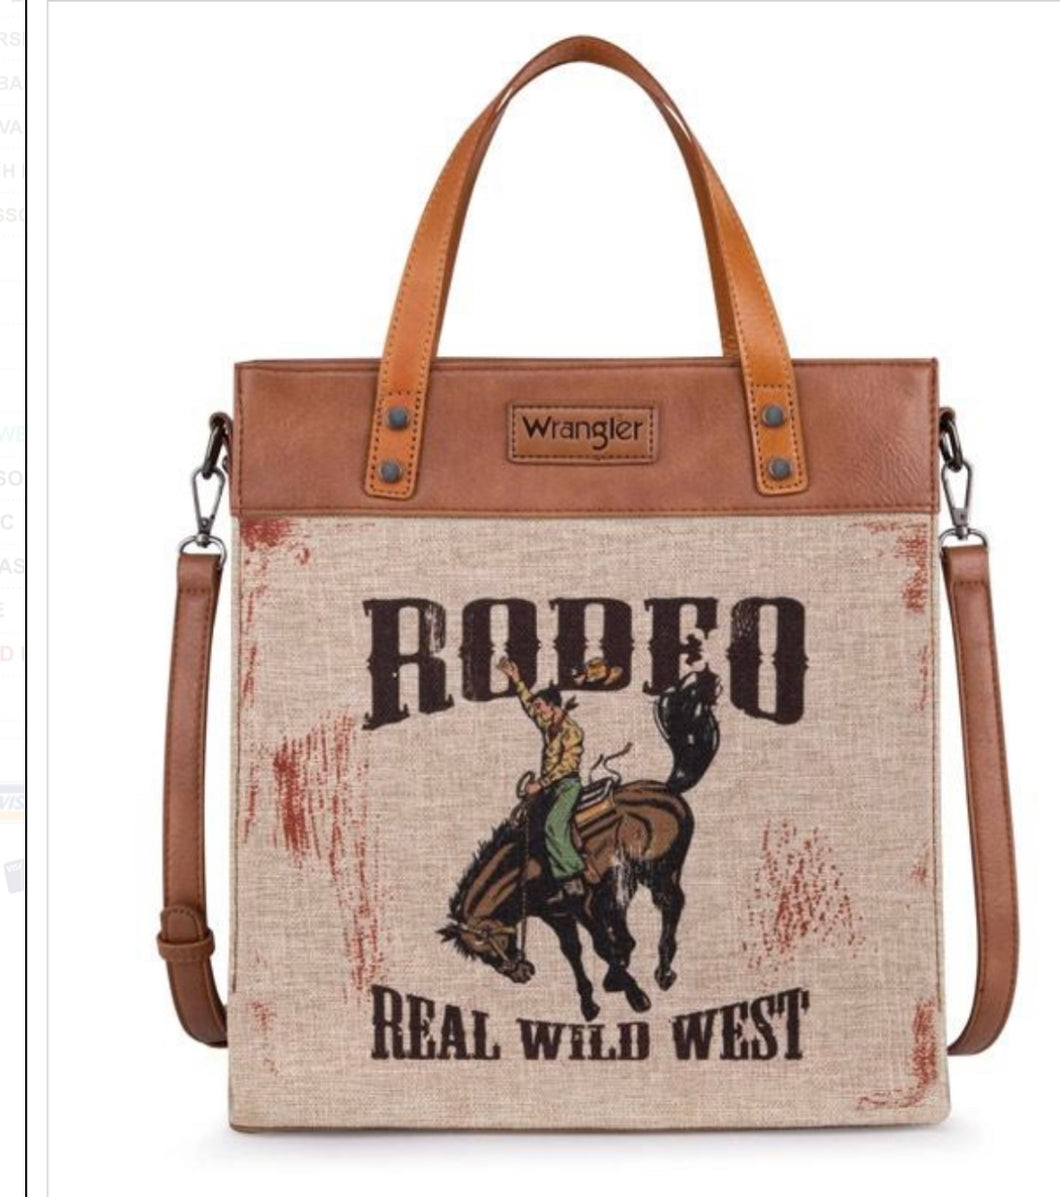 Wrangler Montana west rodeo purse